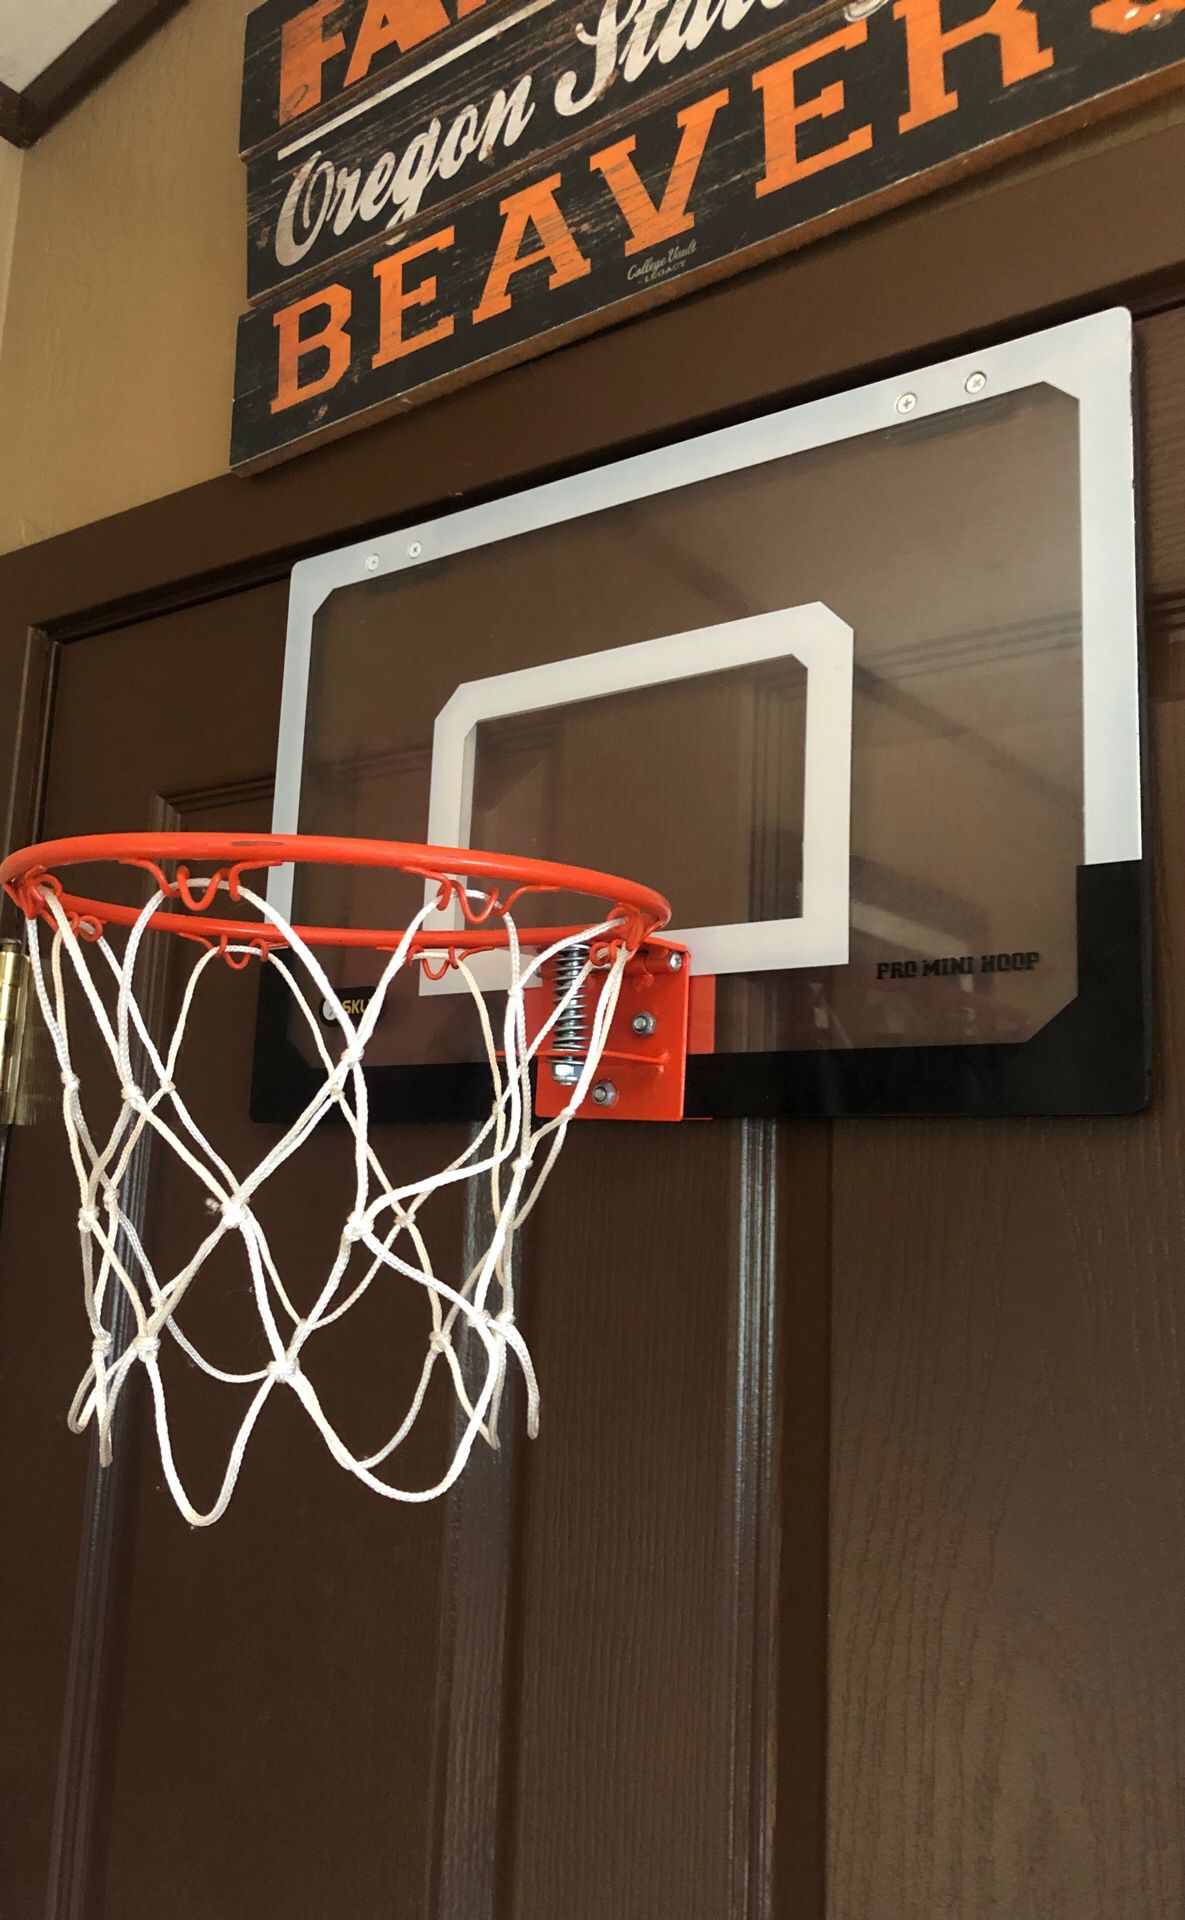 Indoor basketball hoop